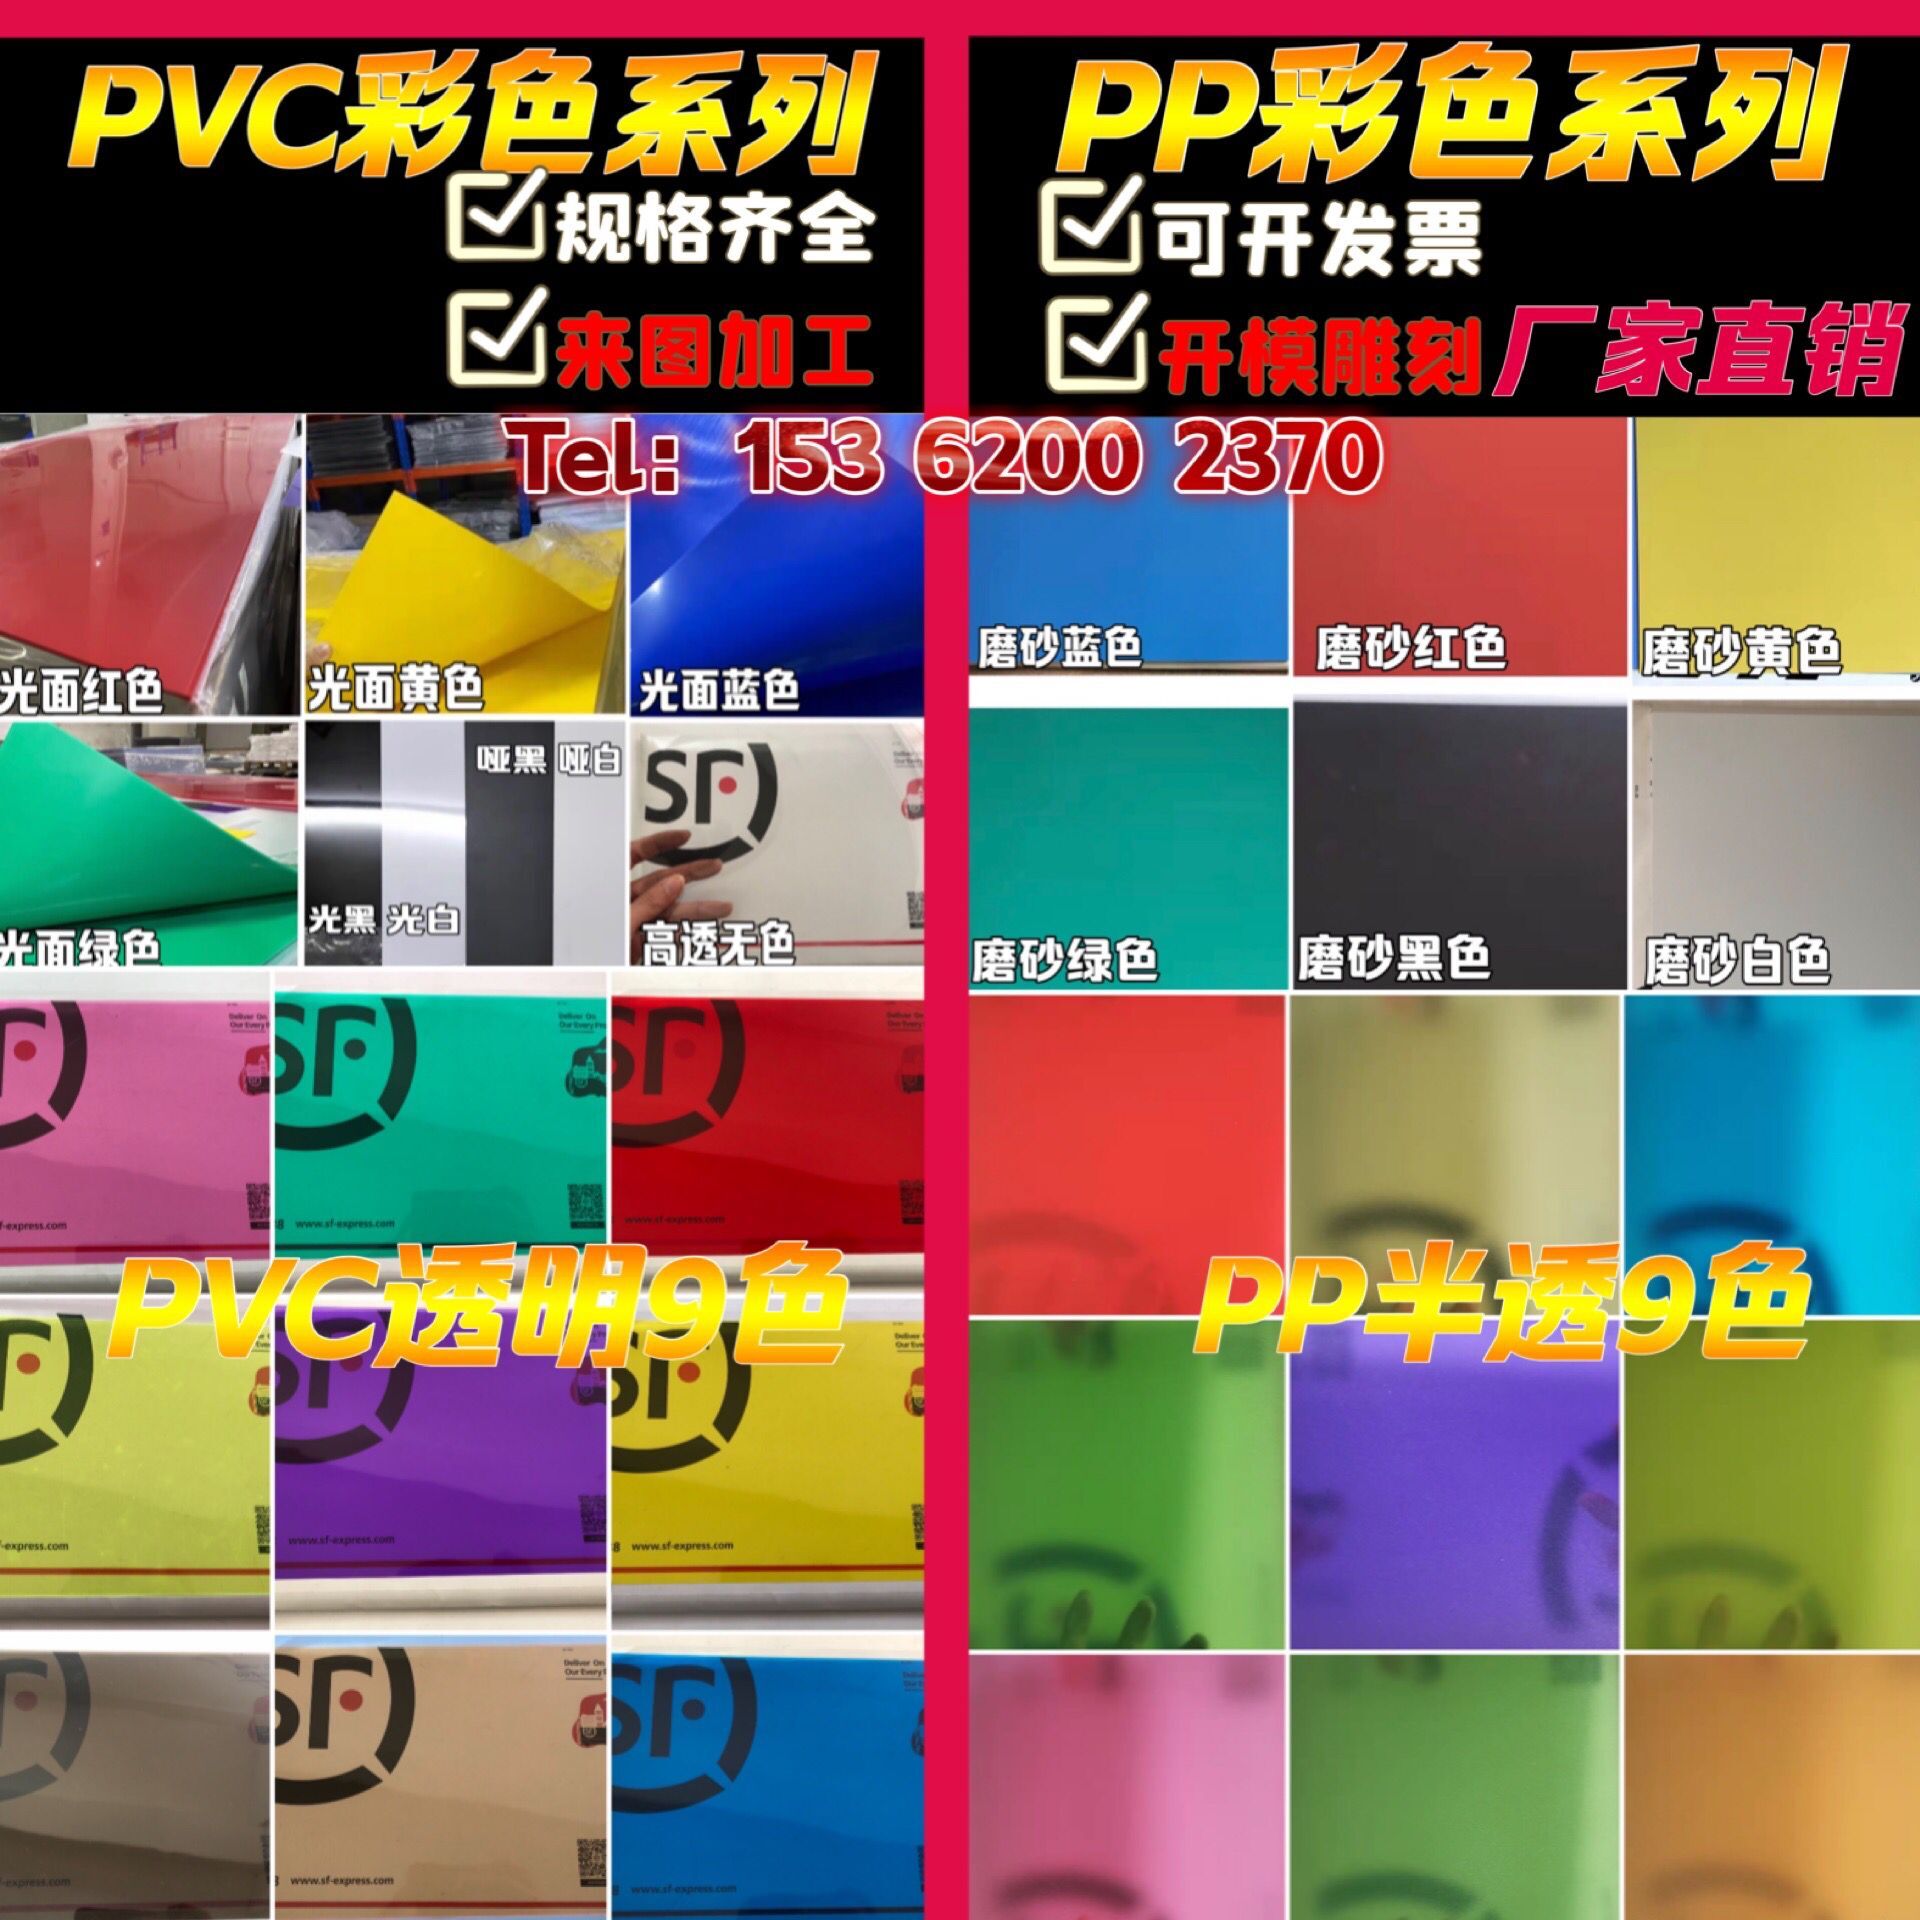 PVC彩透滤光硬片彩色透明塑料片早教红黄蓝三原色PVC硬质纸膜片材